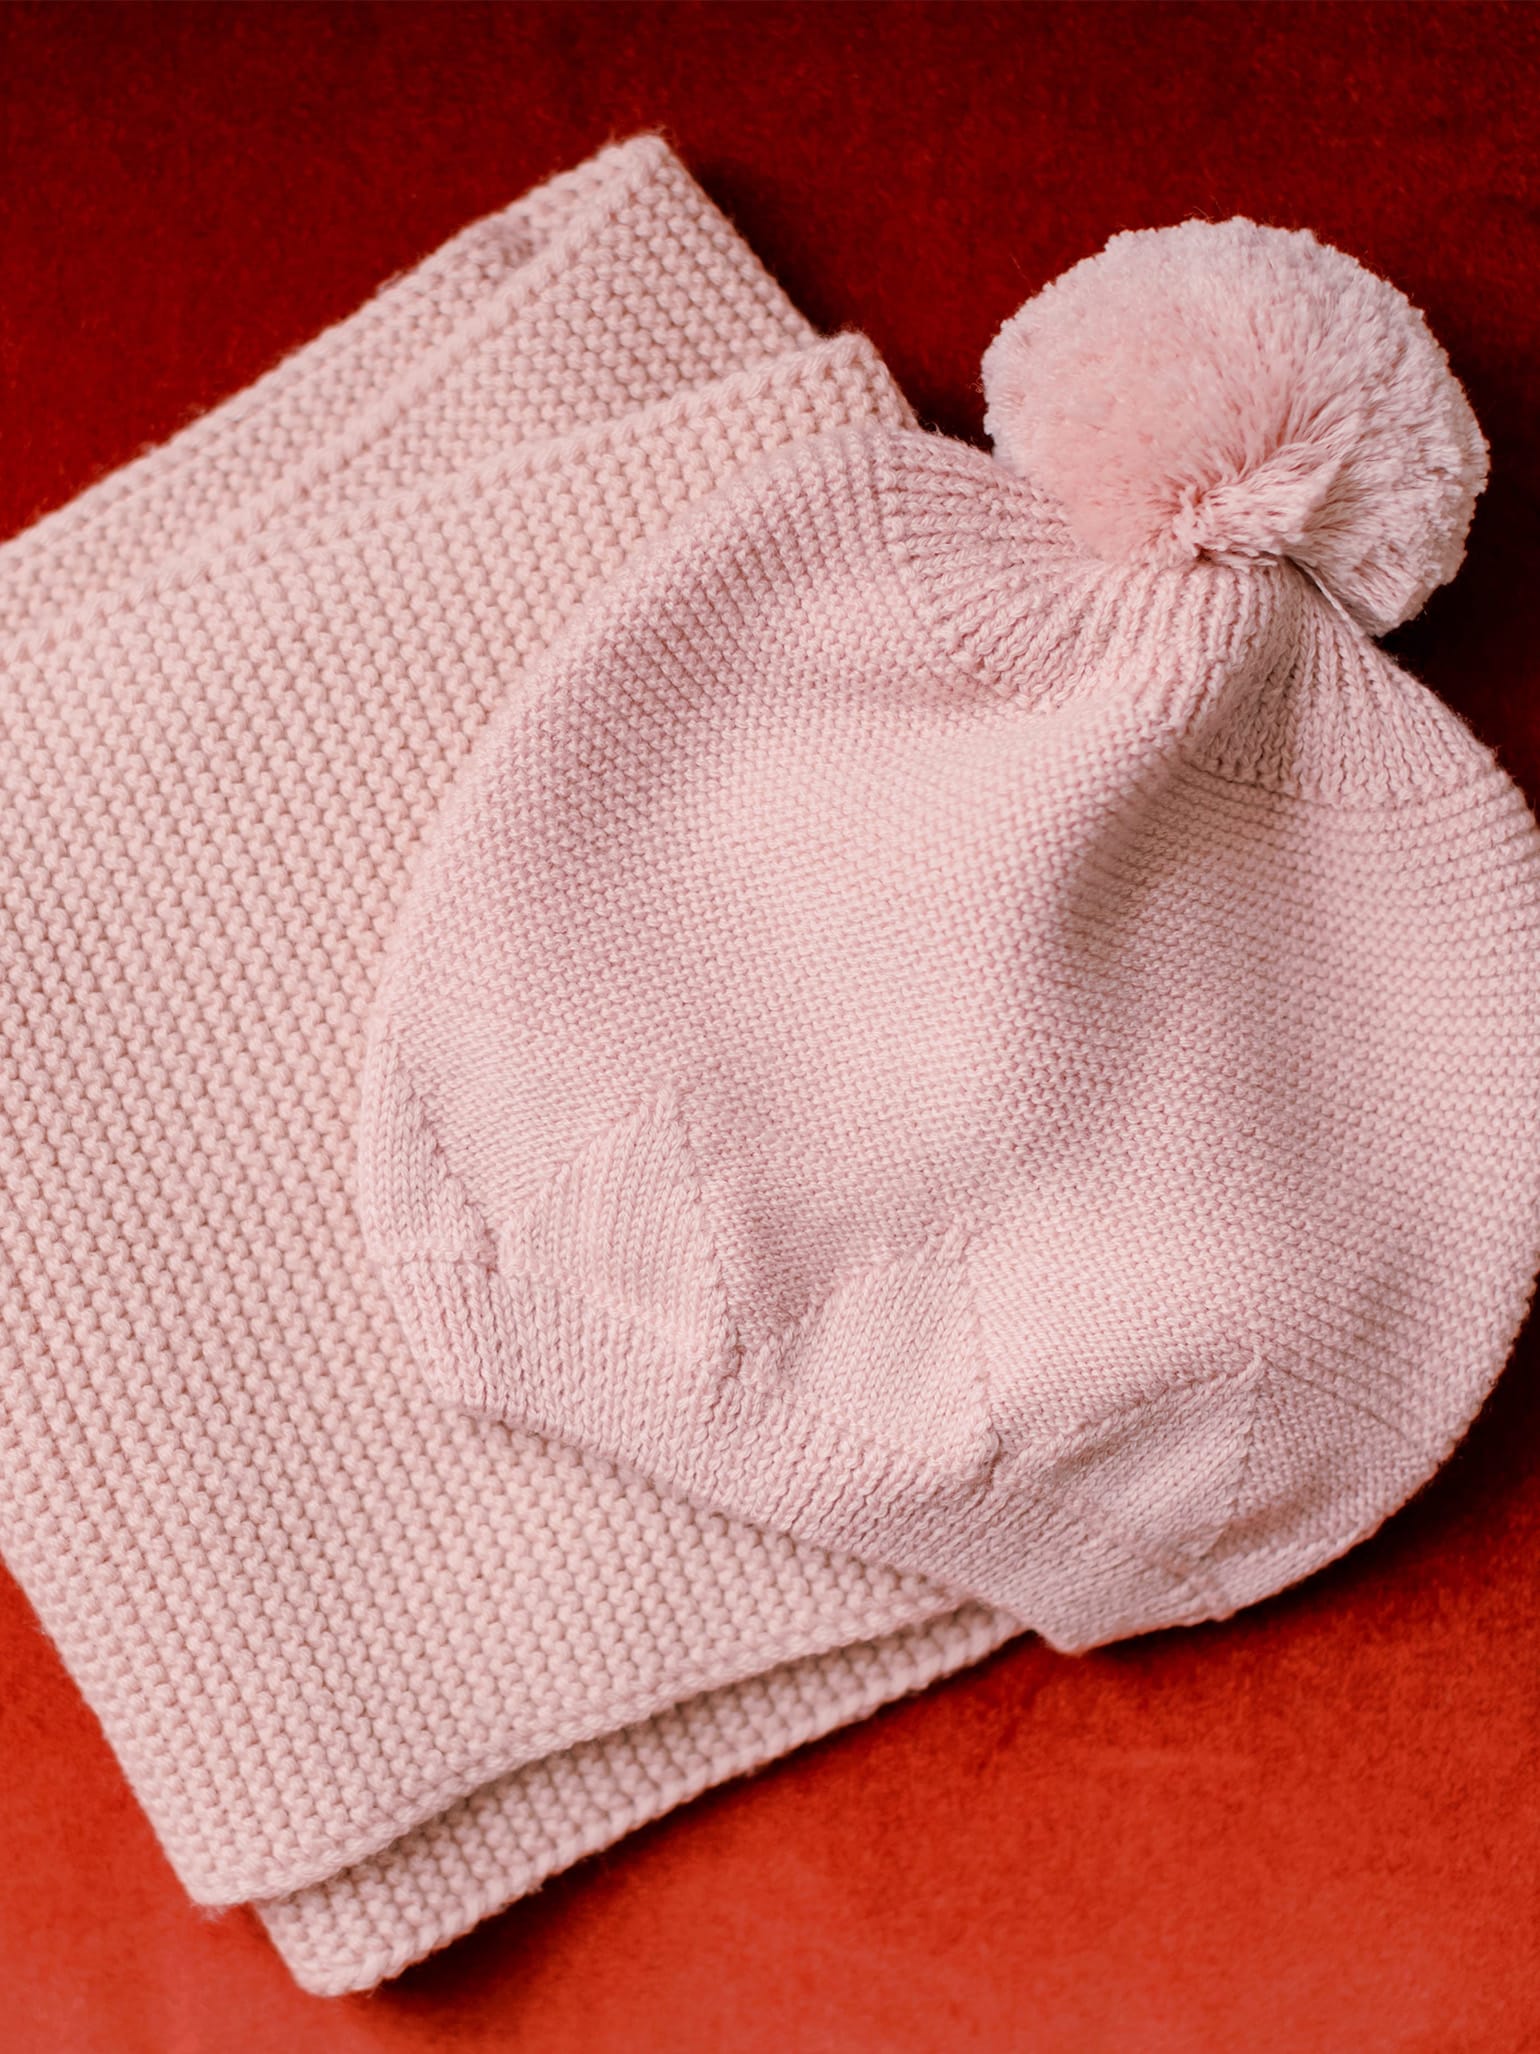 Pink Merino Girl Bobble Hat